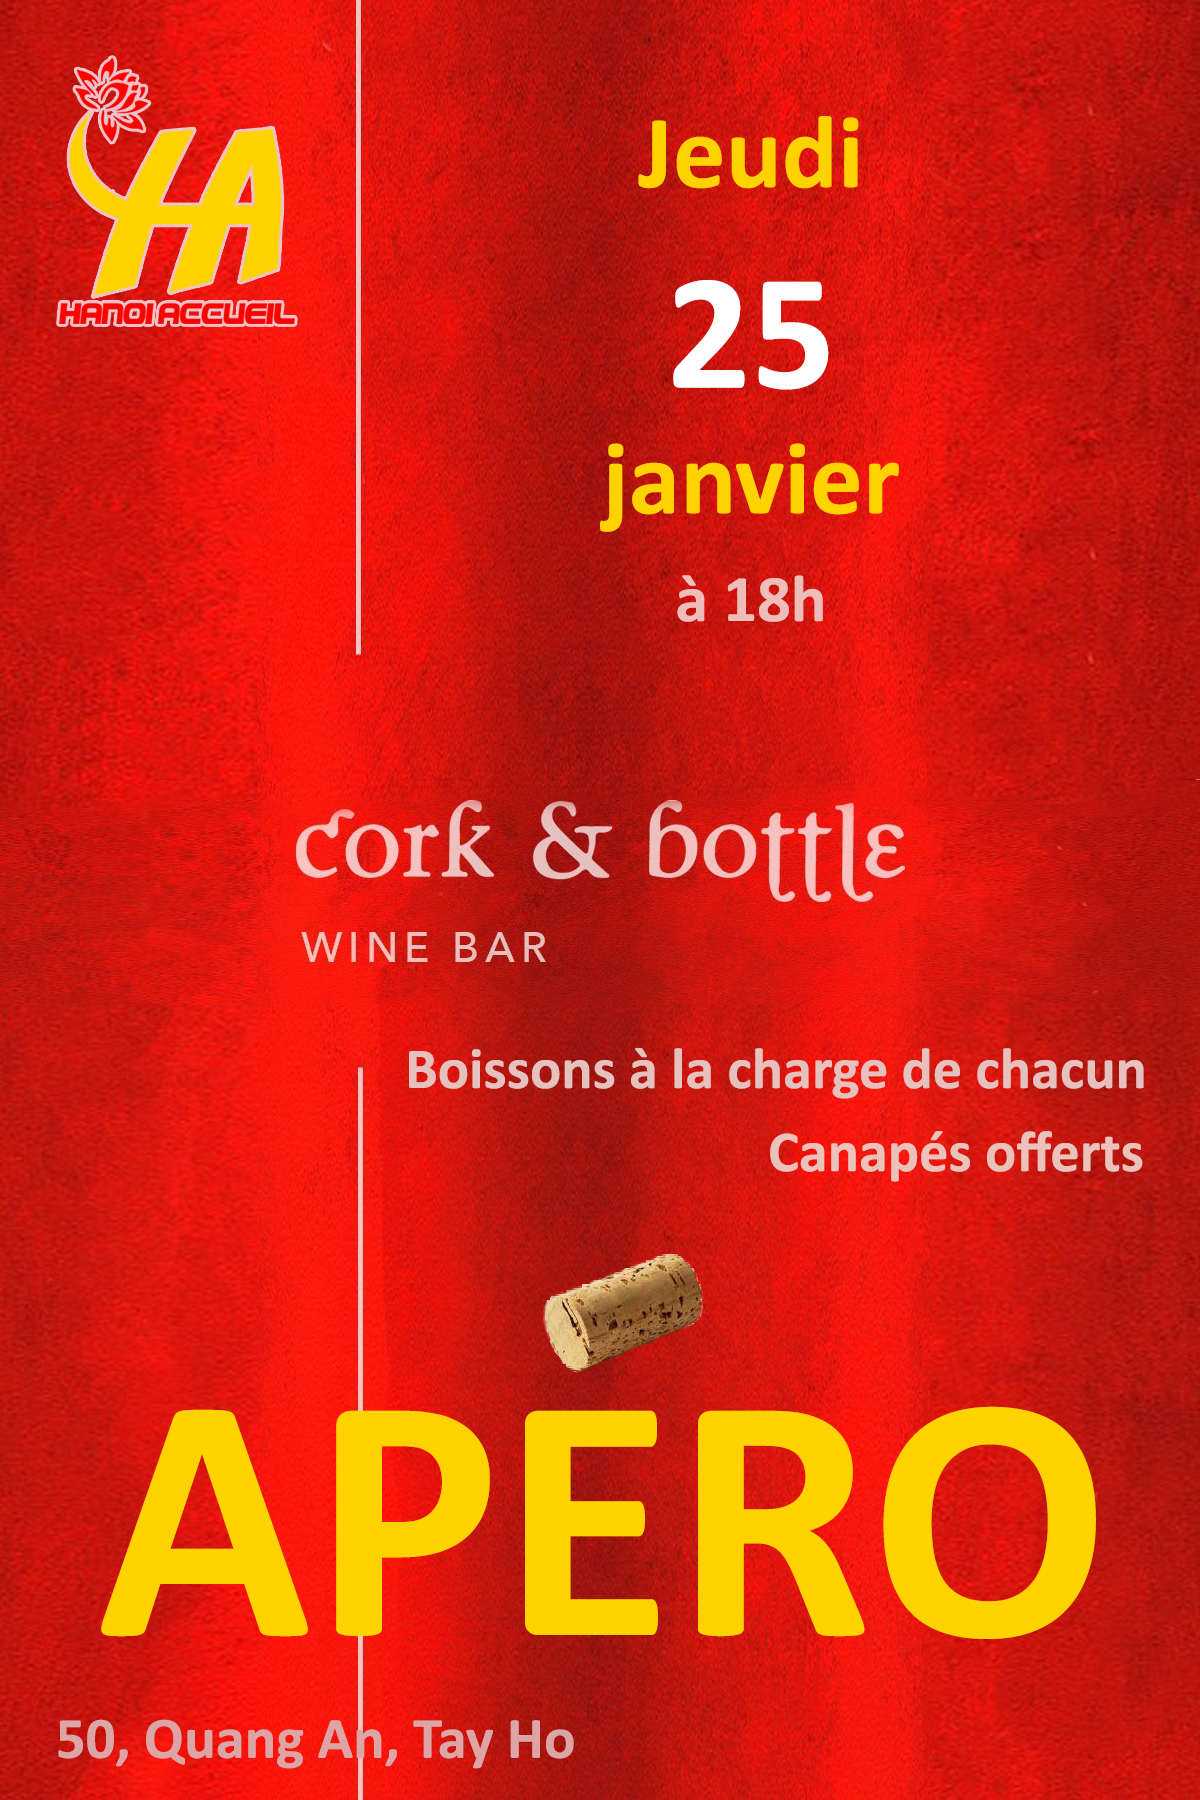 Apéro Cork & bottle